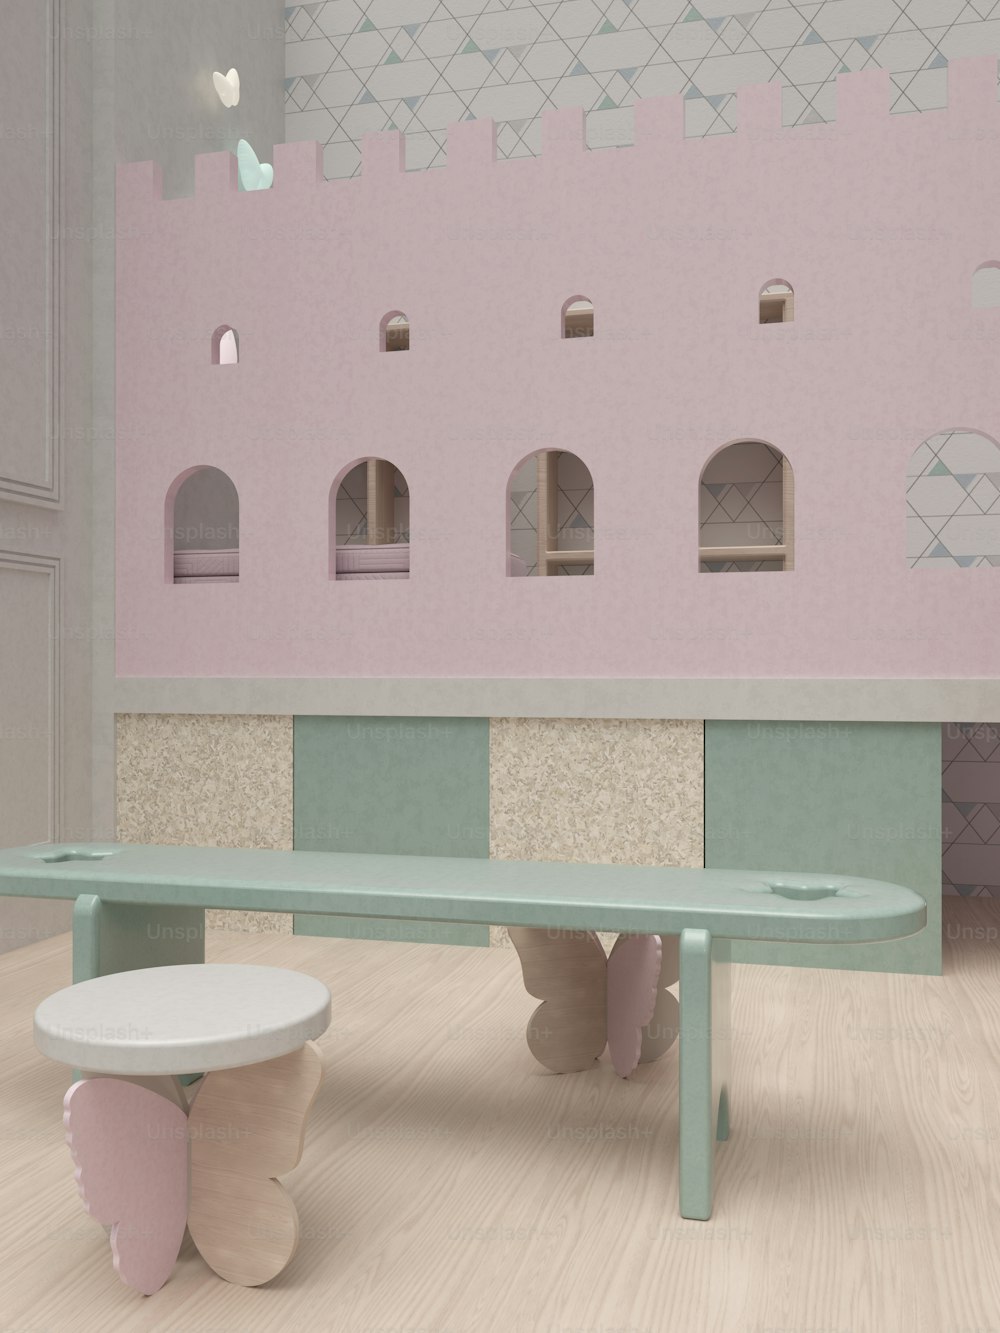 un banc et une table dans une pièce au mur rose